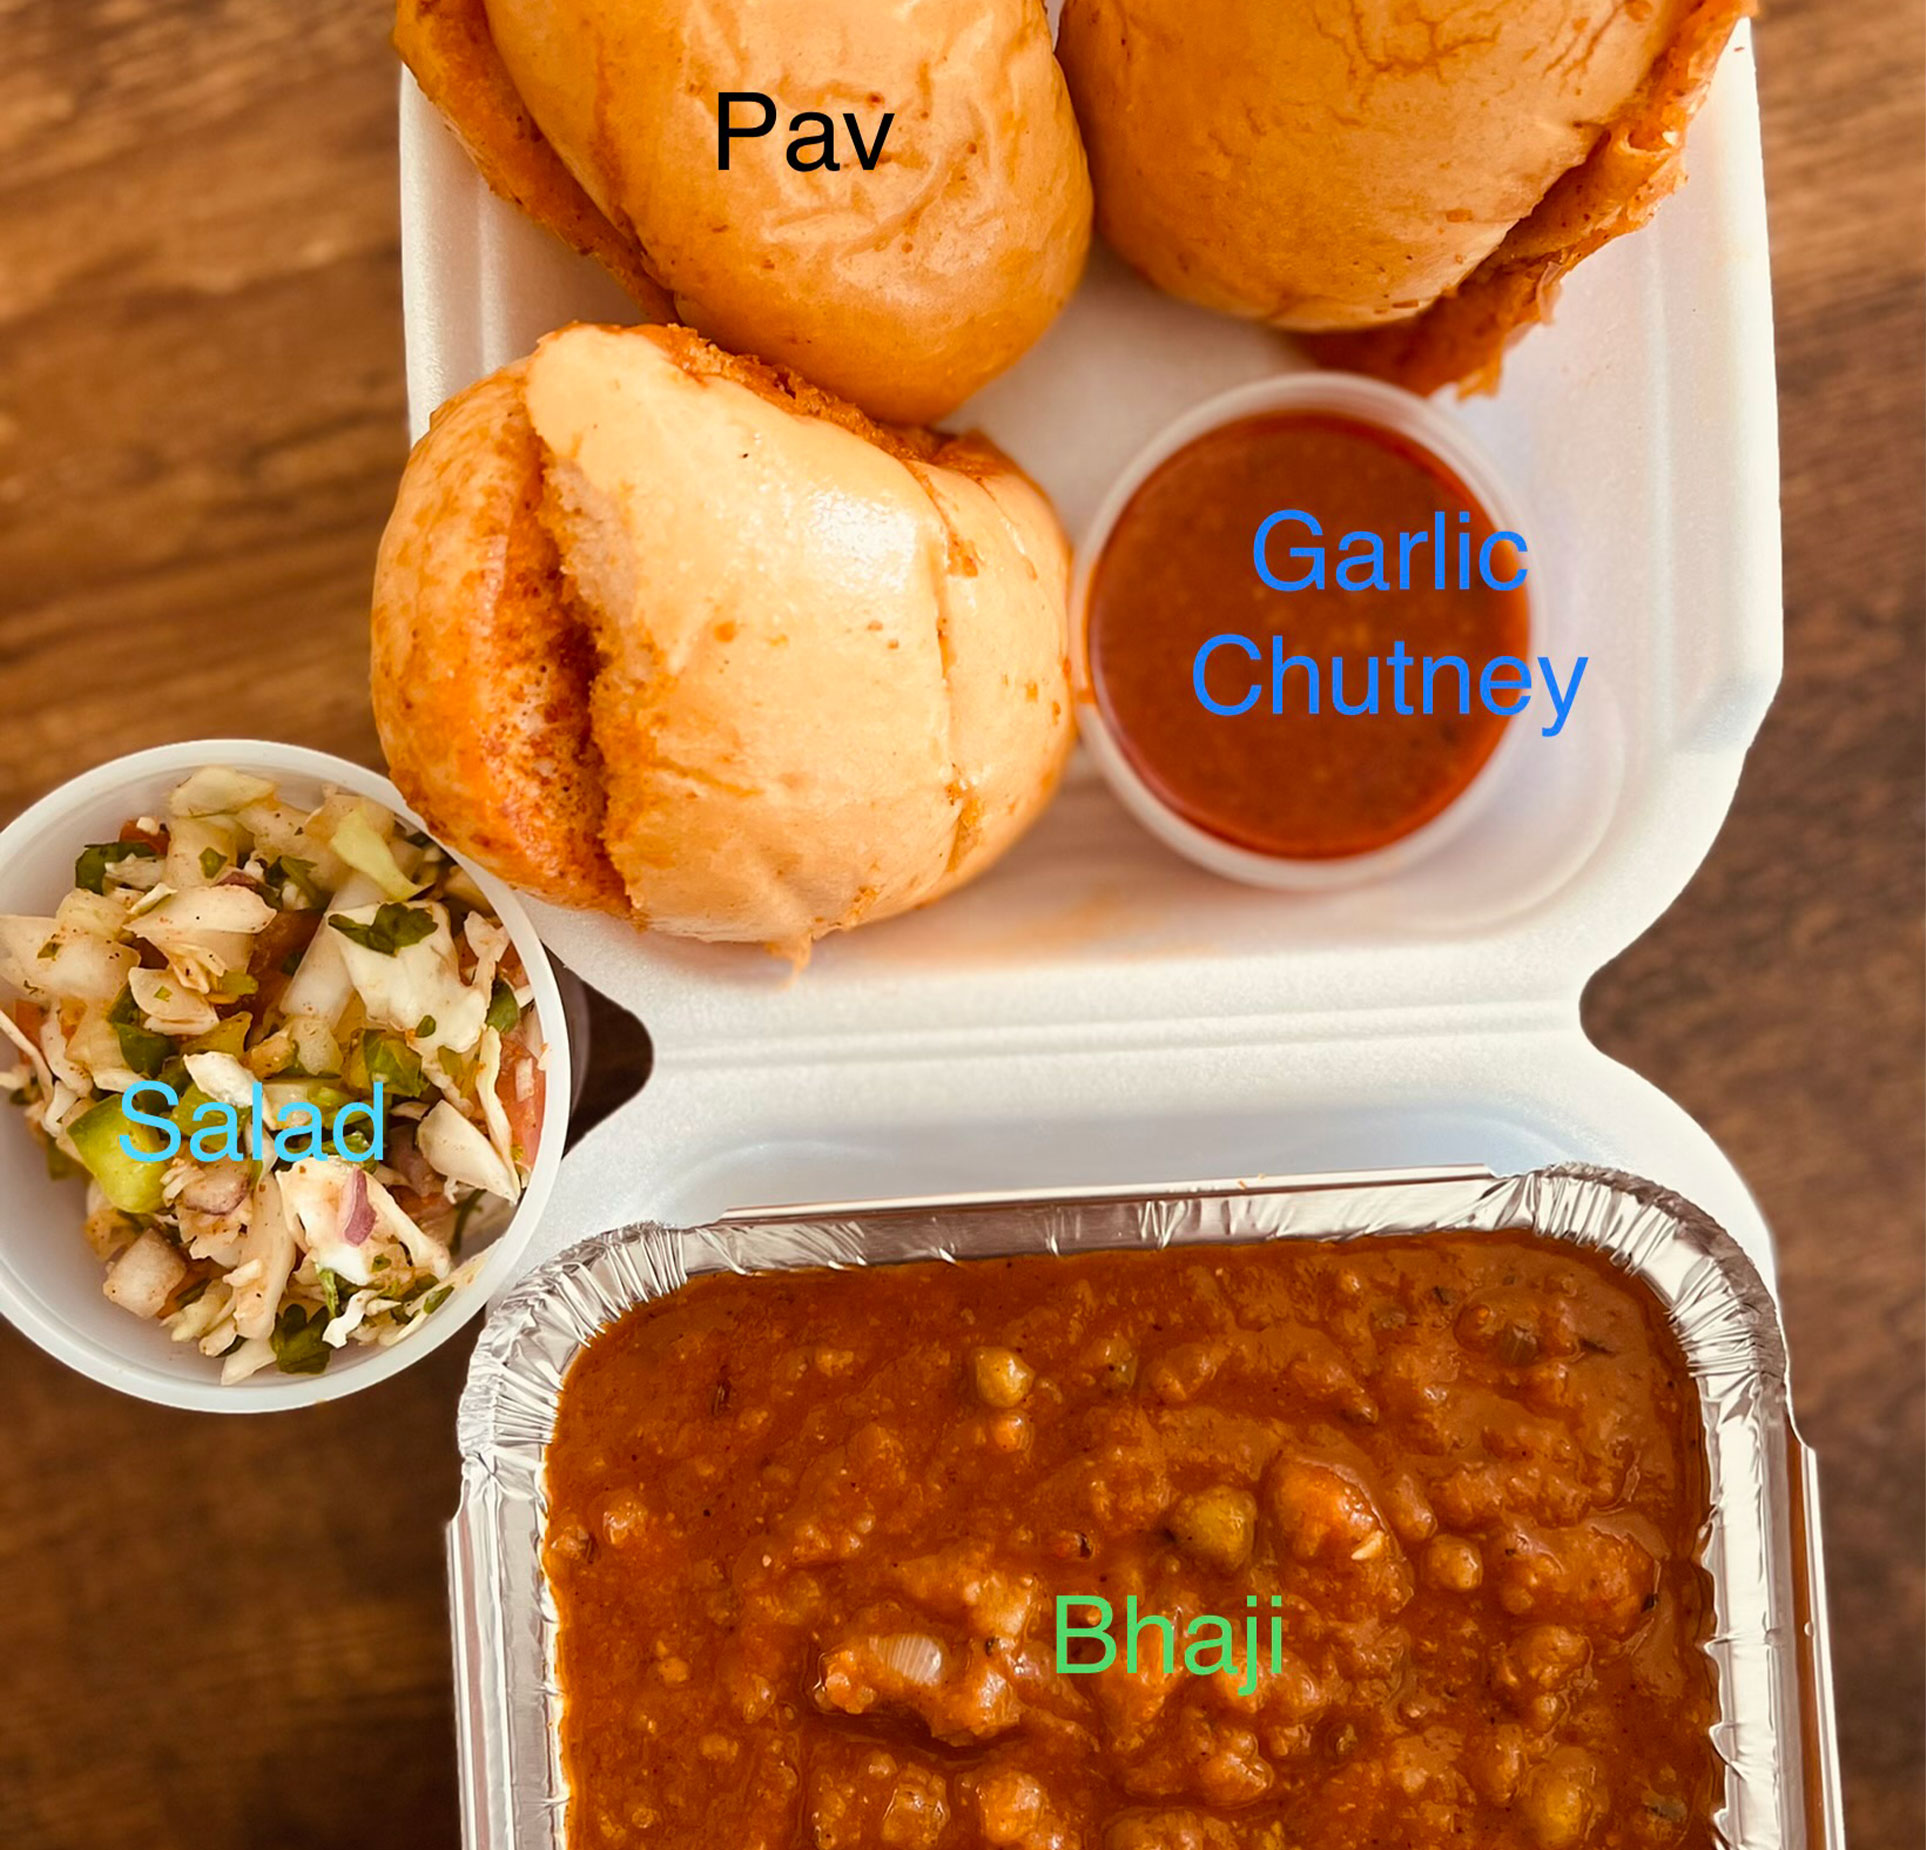 Bhaji - Garlic Chutney - Pav and salad